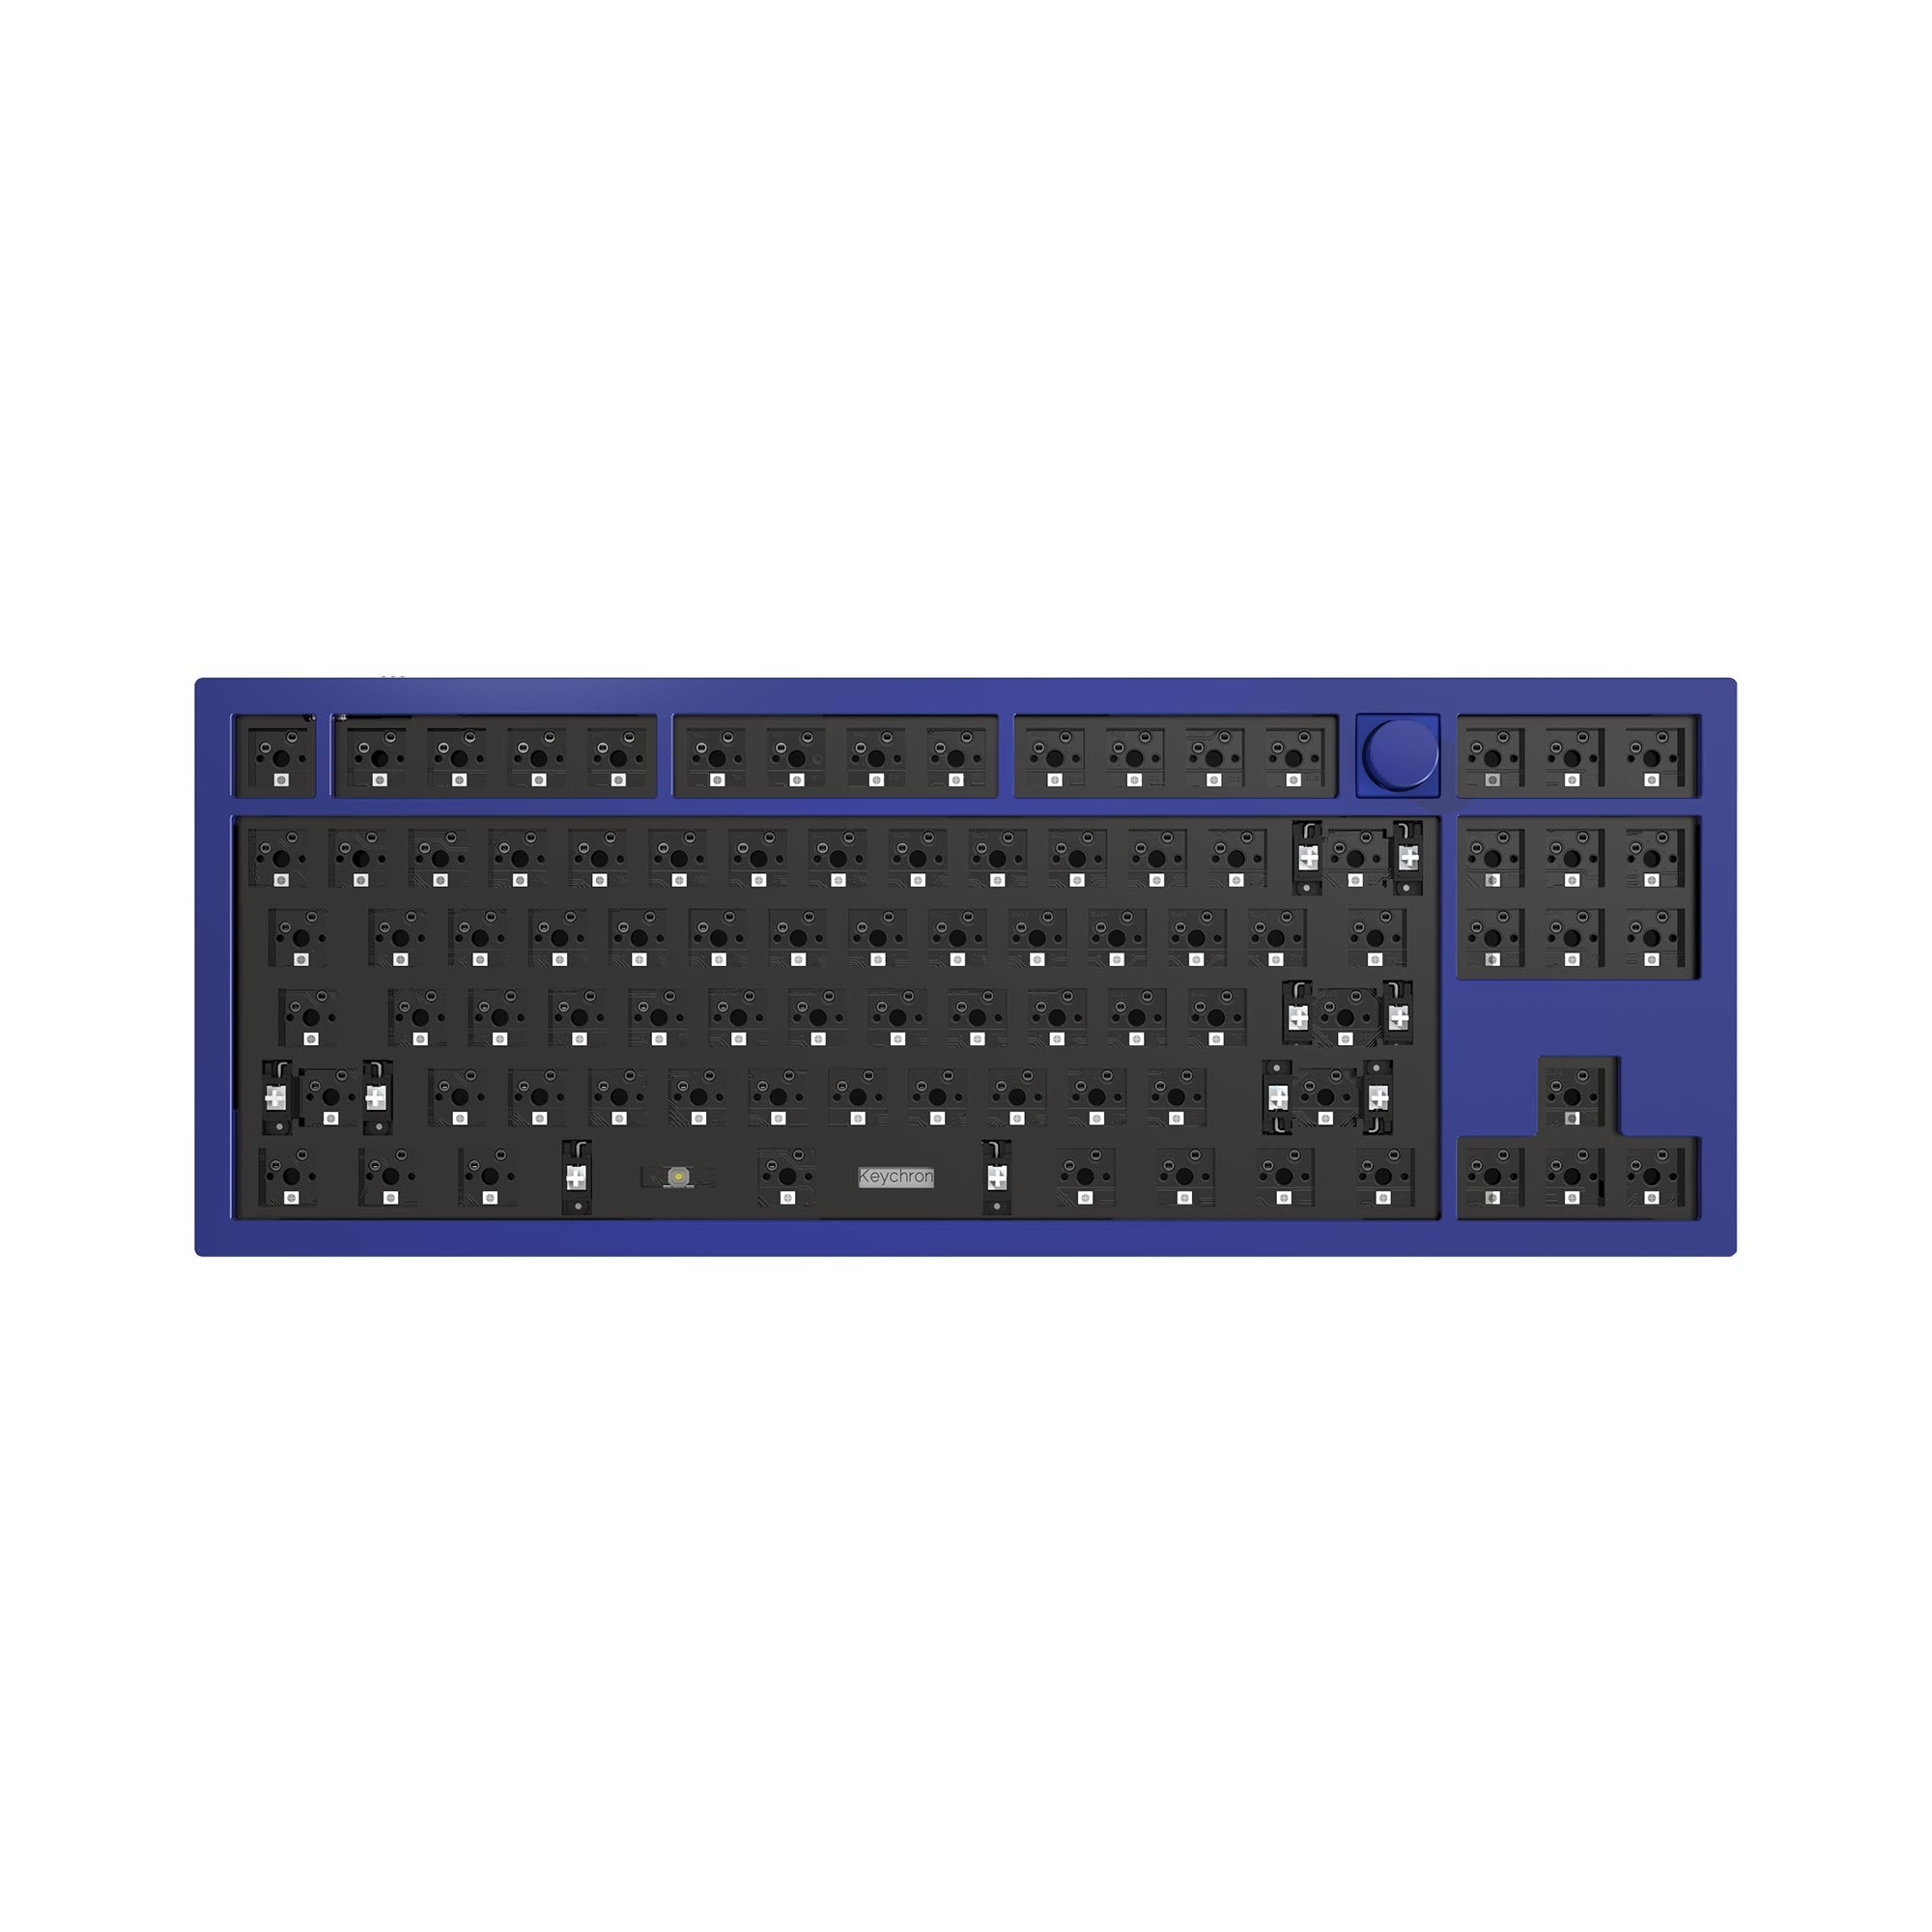 Keychron Q3 QMK Custom Mechanical Keyboard (US ASIN Keyboard)